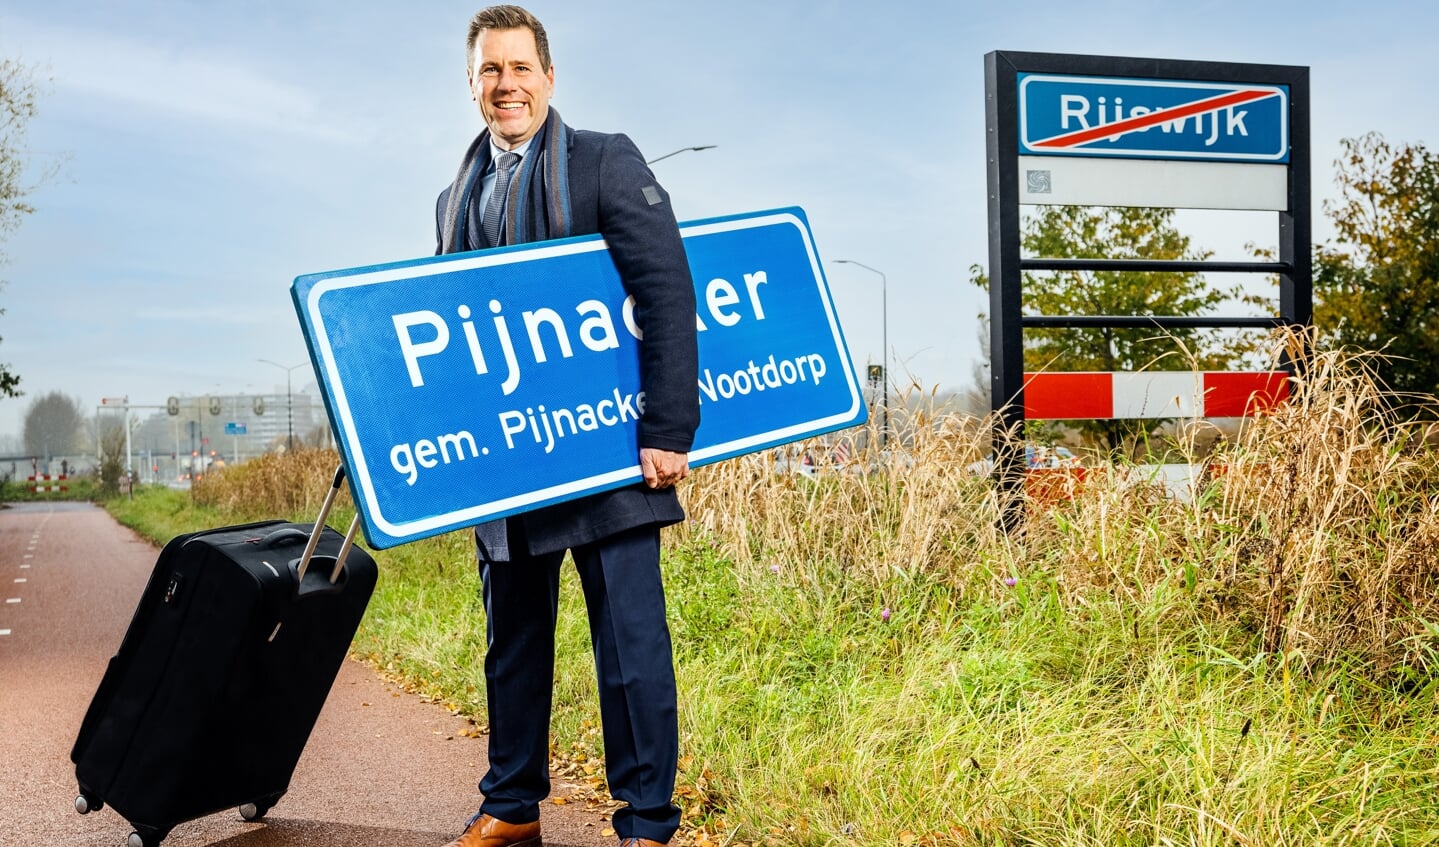 Björn Lugthart heeft Rijswijk verruild voor Pijnacker-Nootdorp, maar hij blijft daar nog wel wonen zo lang hij in zijn nieuwe gemeente nog geen woning kan vinden. De raad geeft hem daar een jaar de tijd voor. (foto Remie Kranendonk)